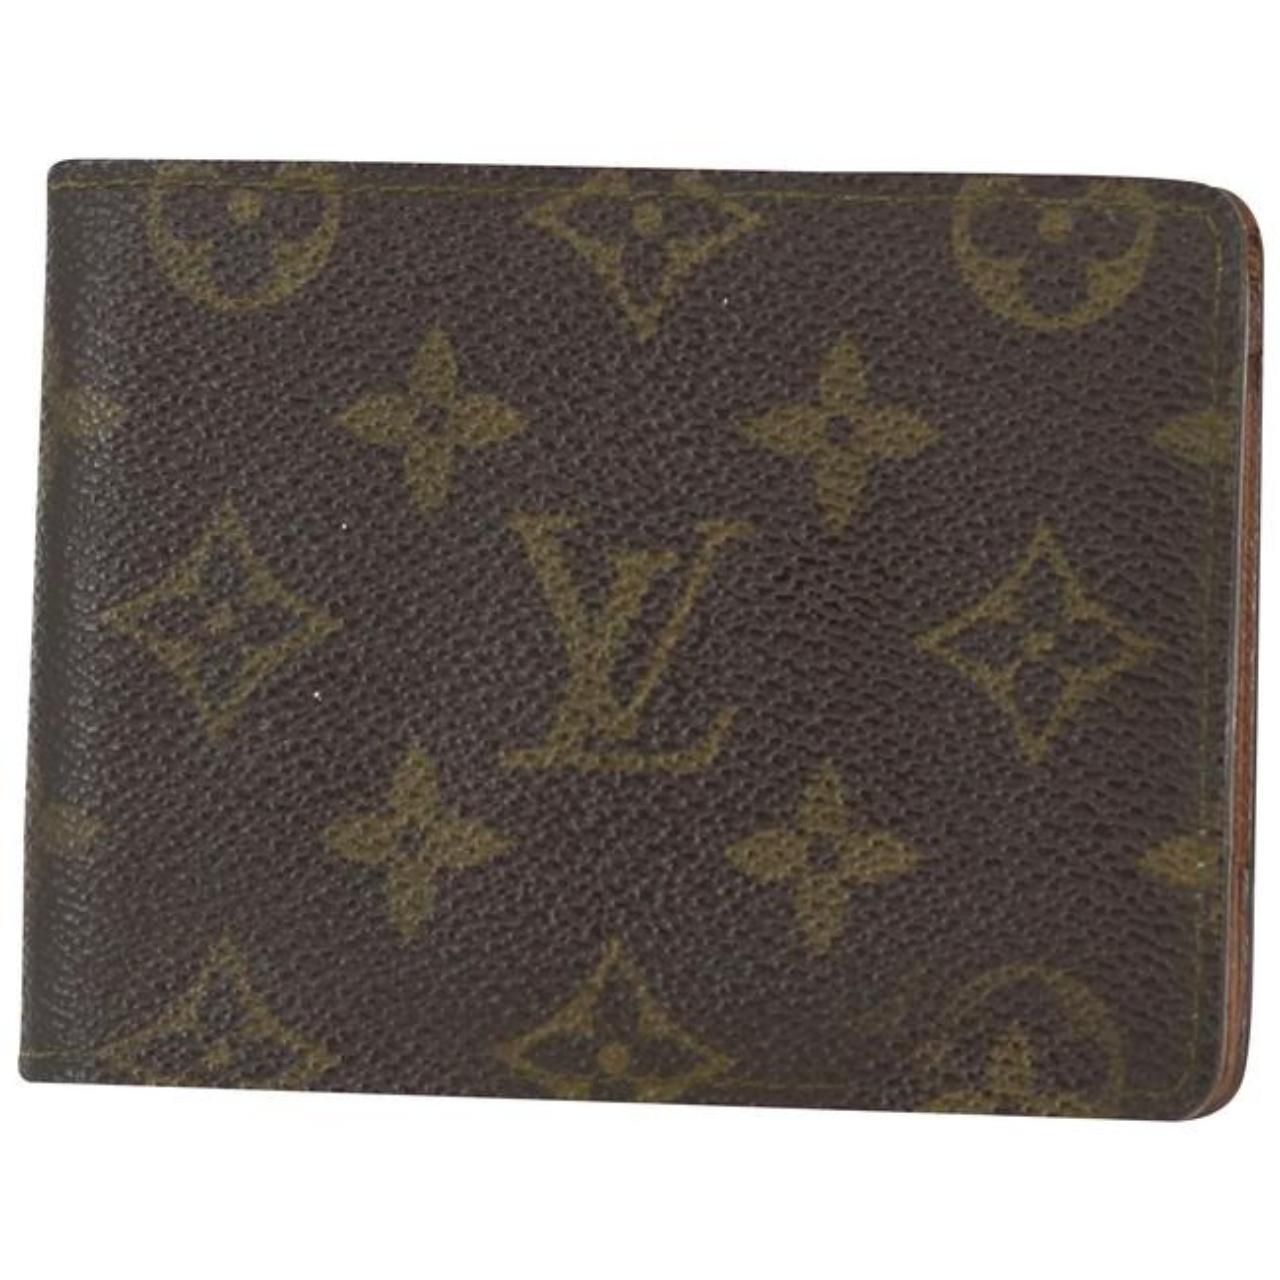 Louis vuitton men's wallet in monogram - Depop